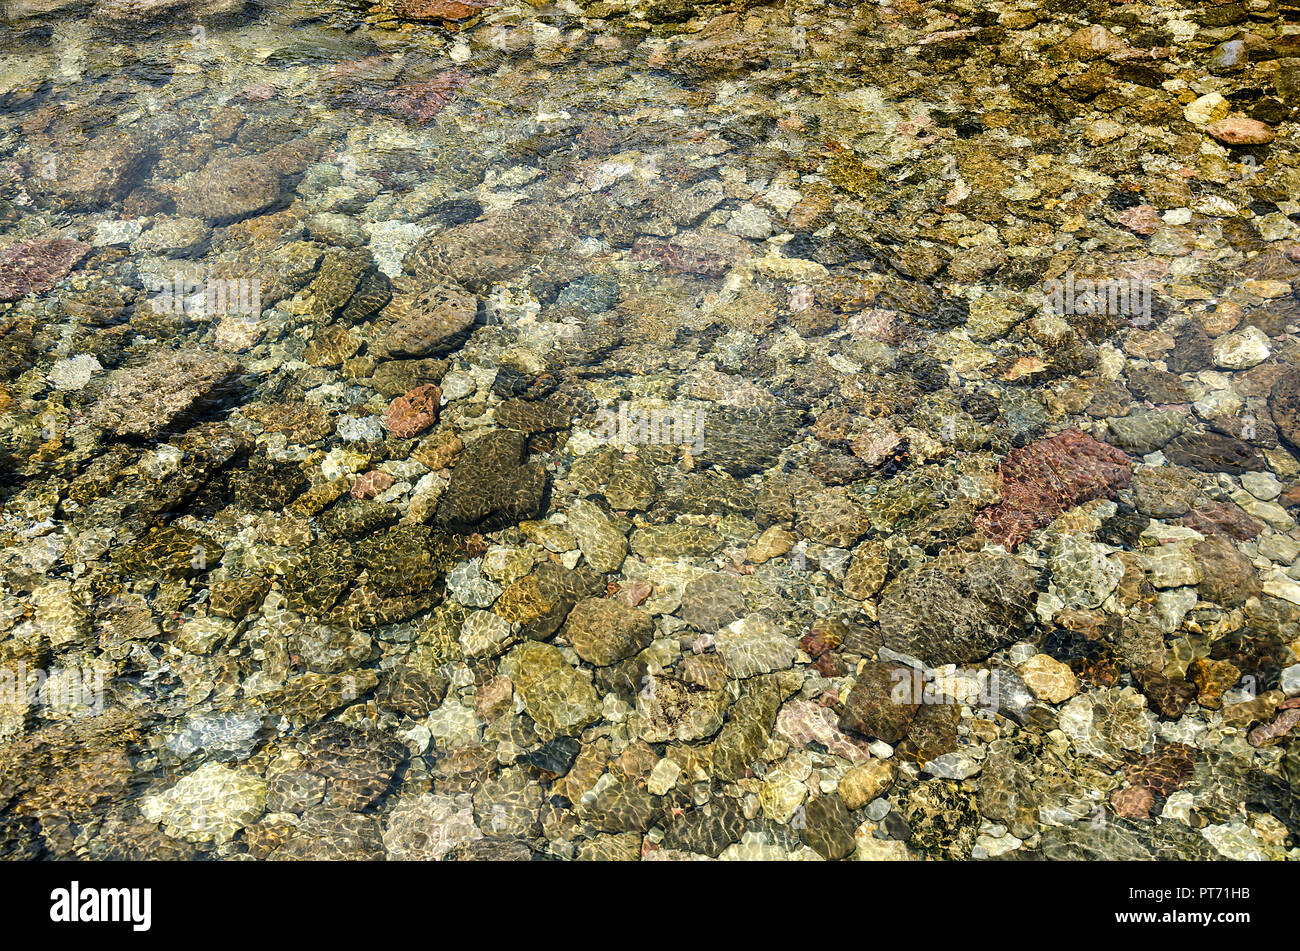 Bunte kleine einzigartige Kieselsteine in kalten klaren Fluss Wasser. Sonne machen unterschiedliche Reflexion. Smoоth und gerippten Kieselsteinen. Kleine Steine. Stockfoto